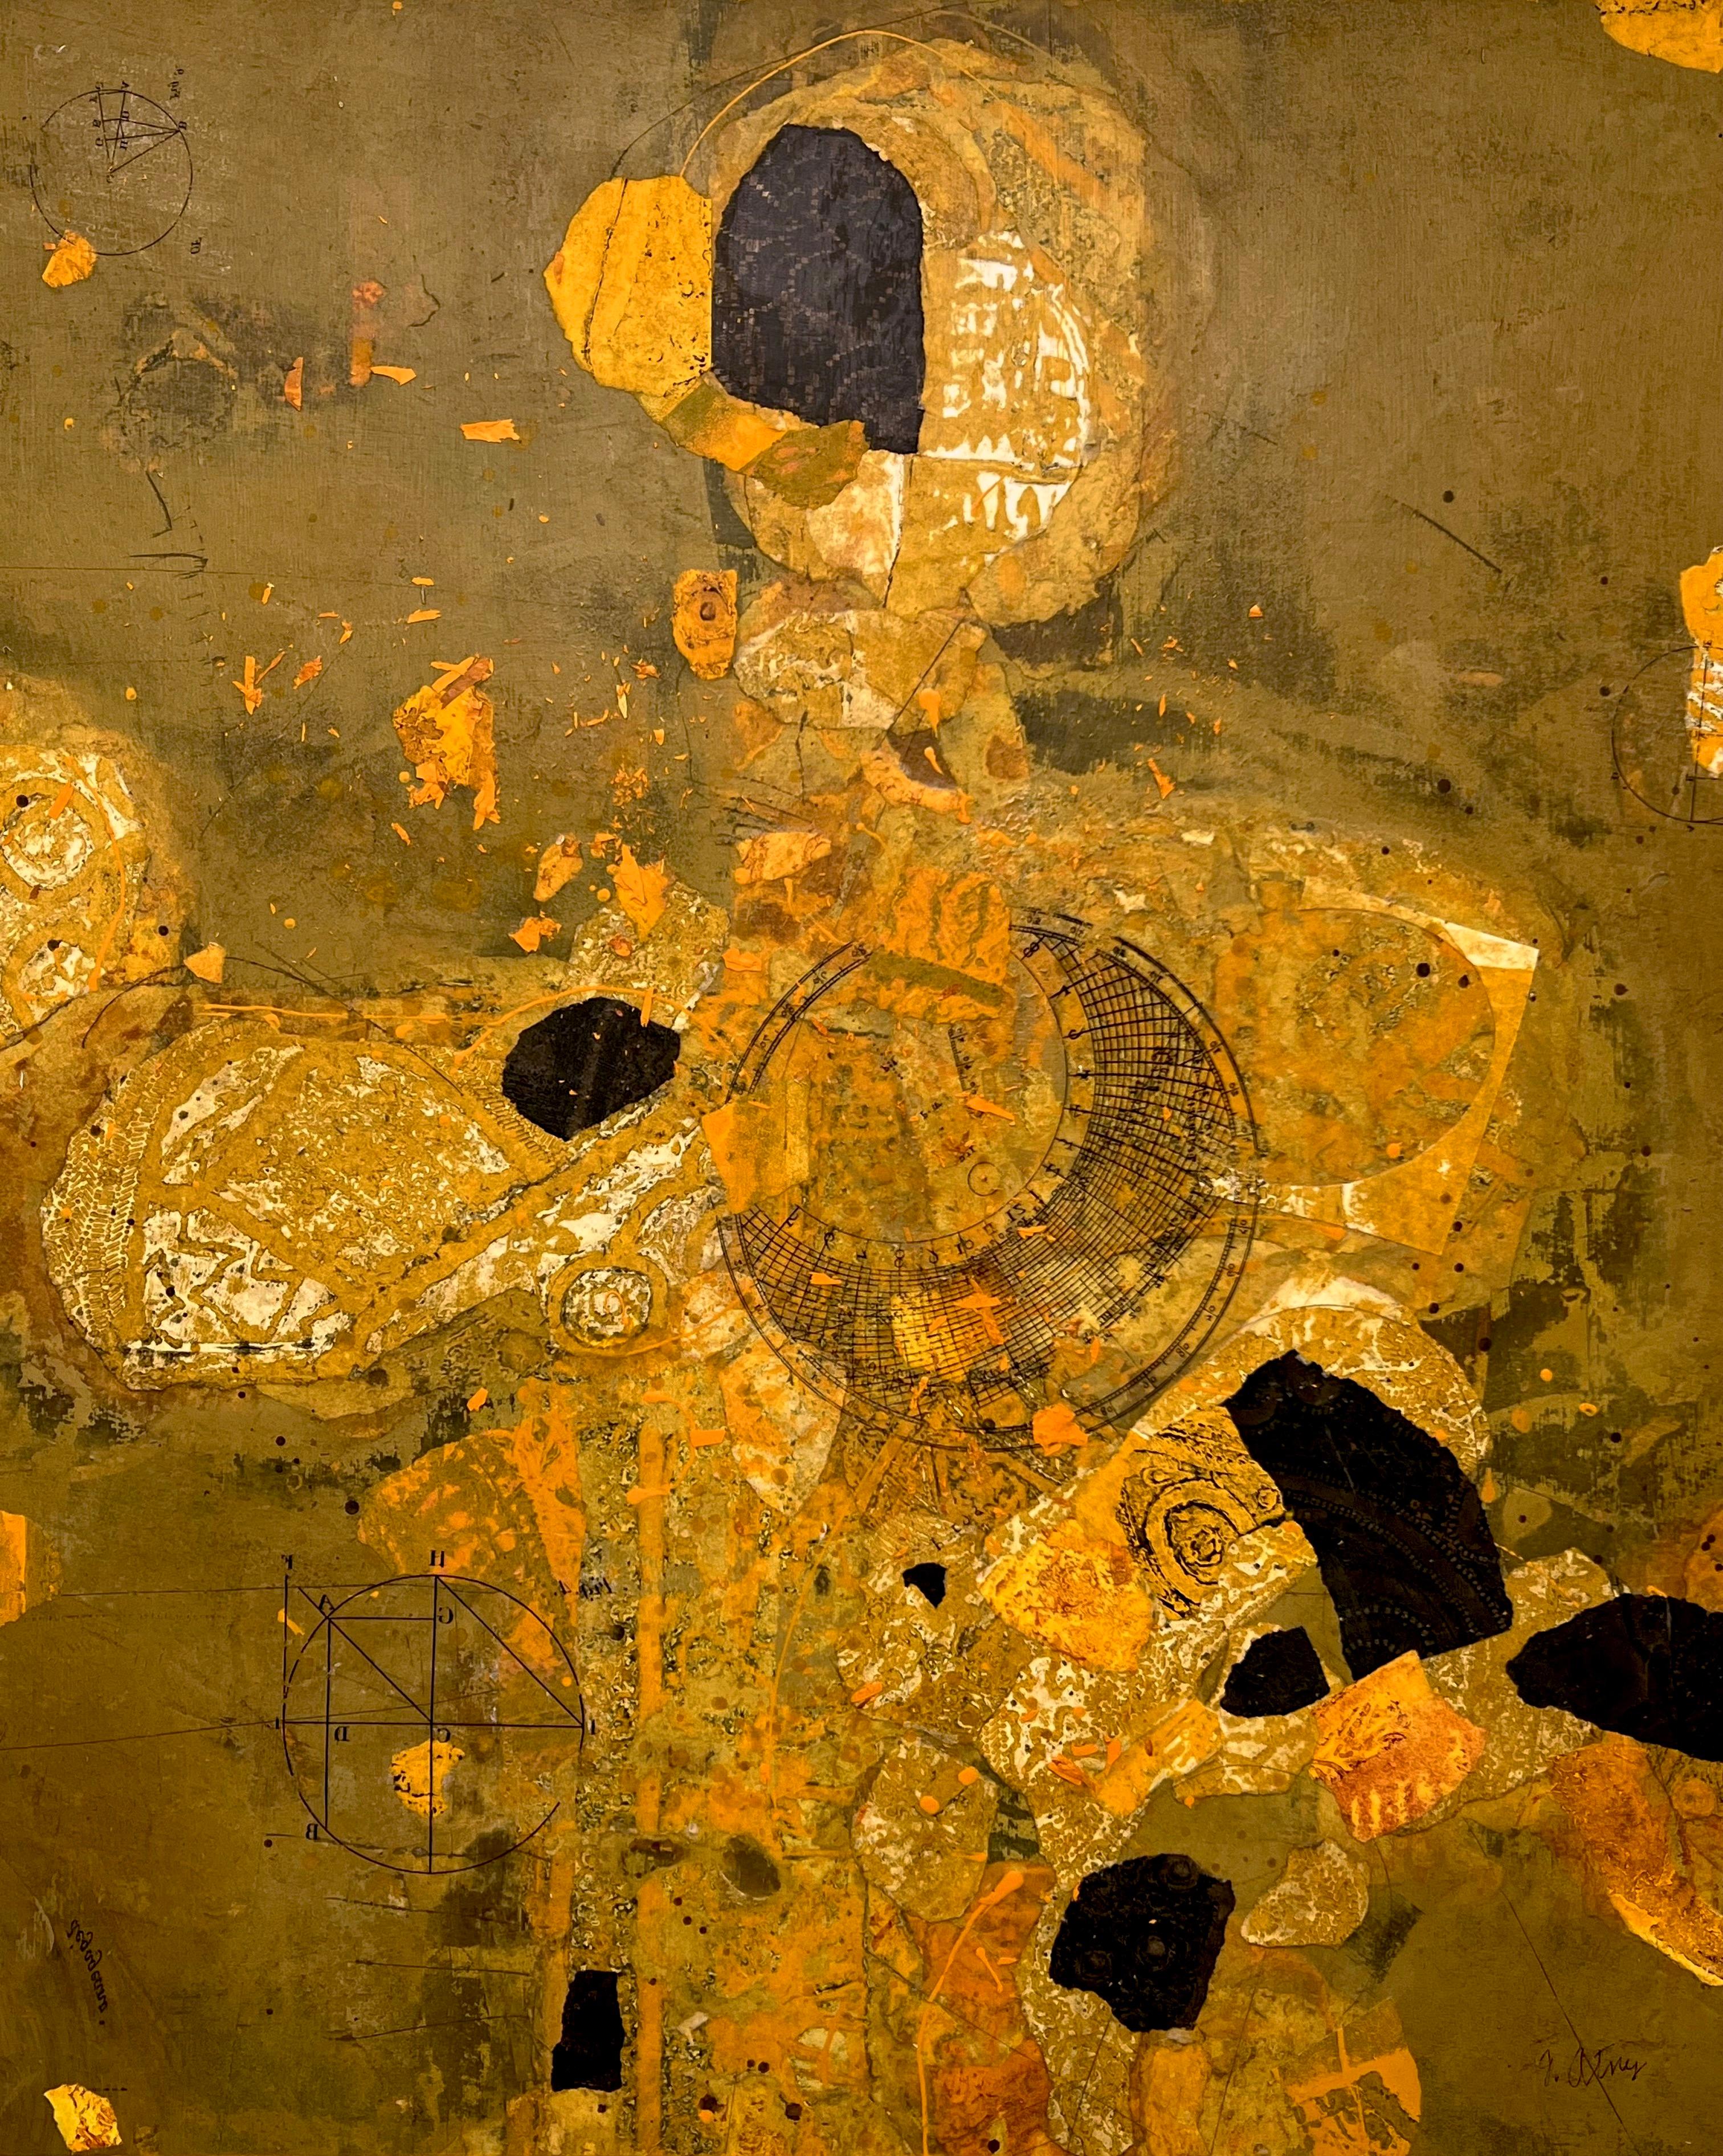 Exquisites Gemälde des prominenten Künstlers Fred Otnes, JR, einer figuralen Frau in Gold, Orange und warmen Erdtönen. Diese einzigartige Mischtechnik aus Öl und Collage weist verschiedene Schichten auf, obwohl das Gemälde bei Berührung glatt ist.